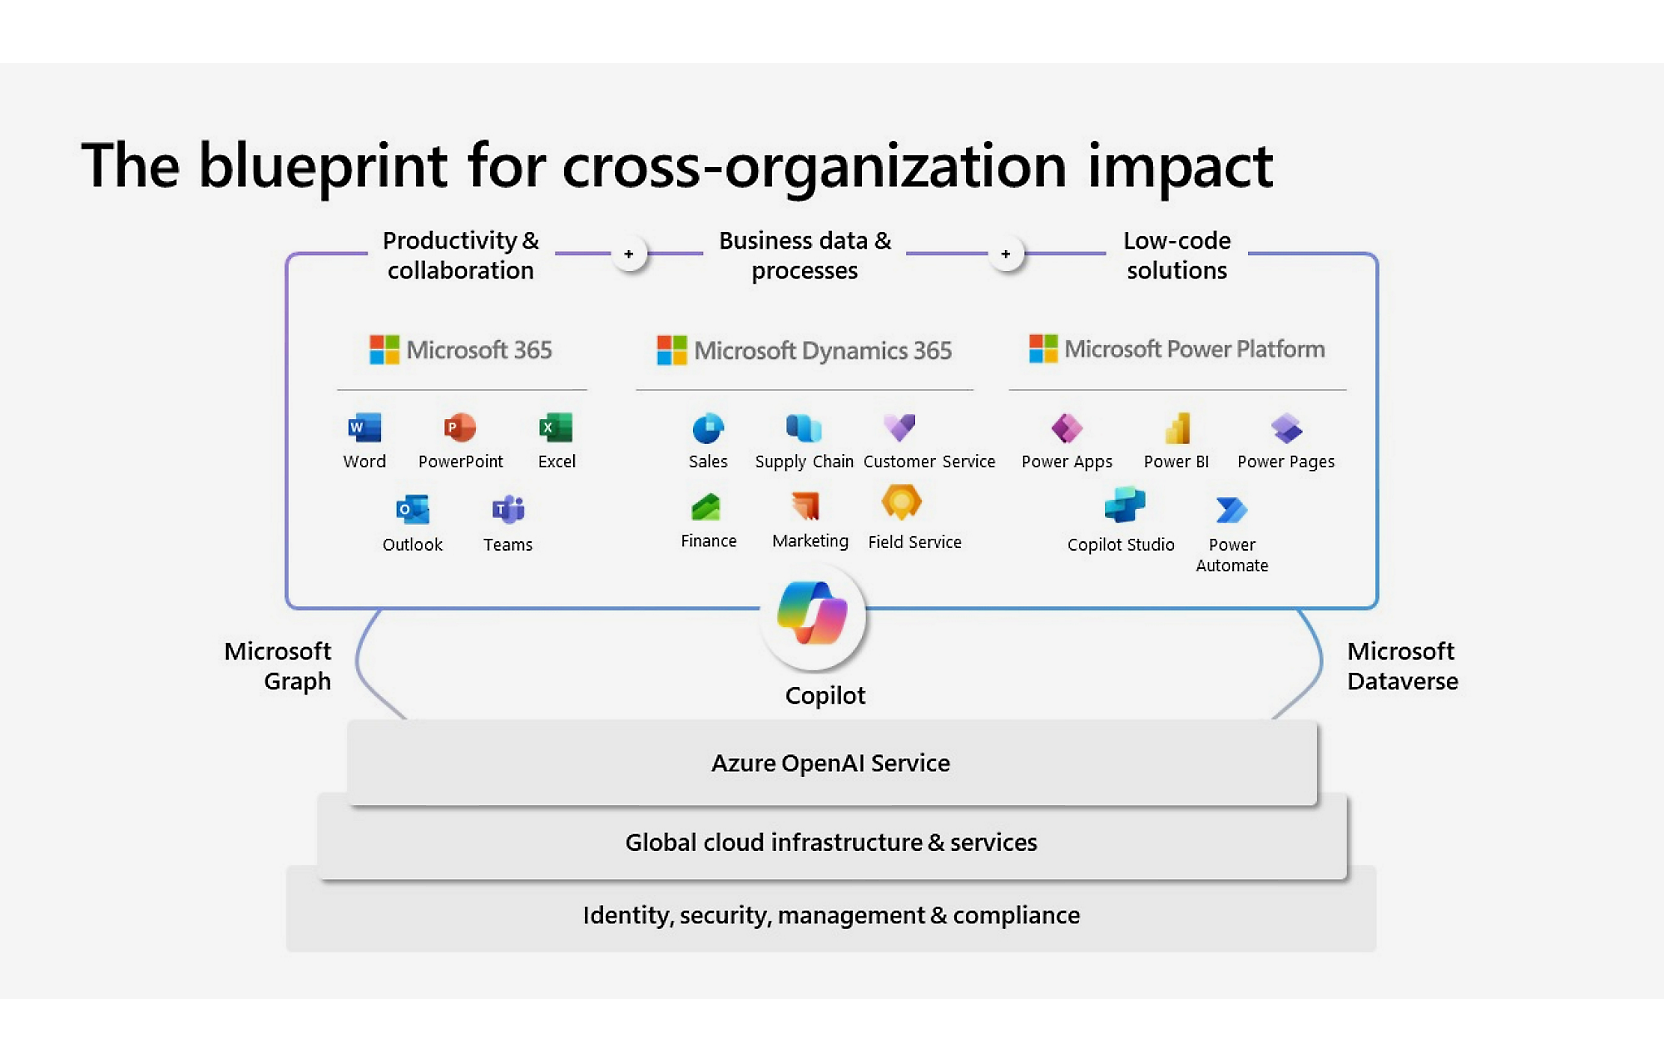 Le blueprint pour l’impact inter-organisations.